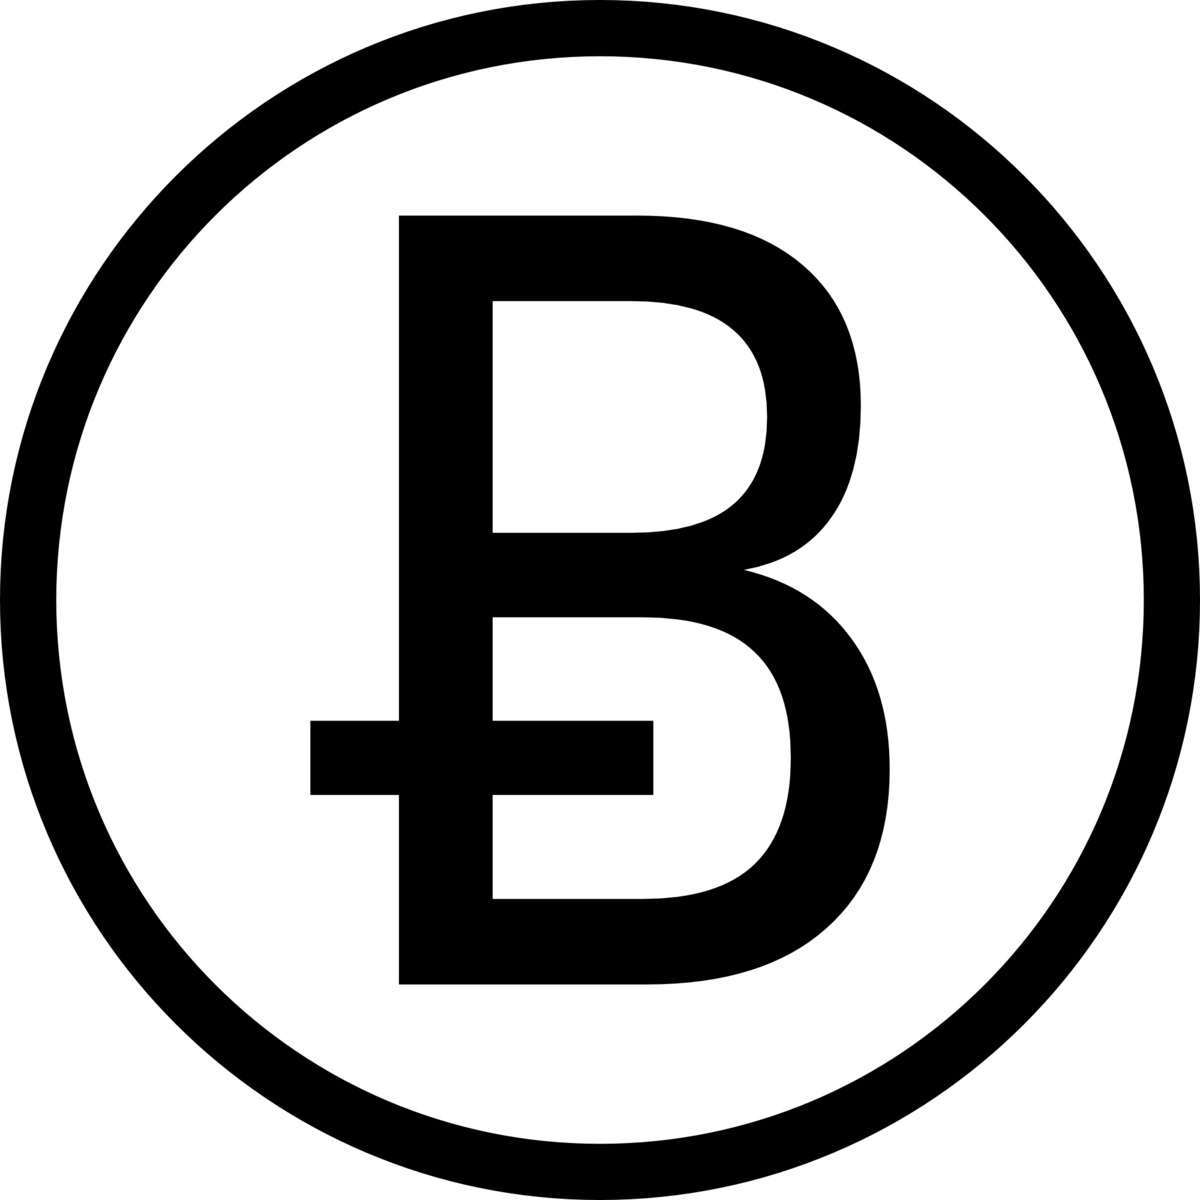 Die alternative Version des Bitcoin-Emblem